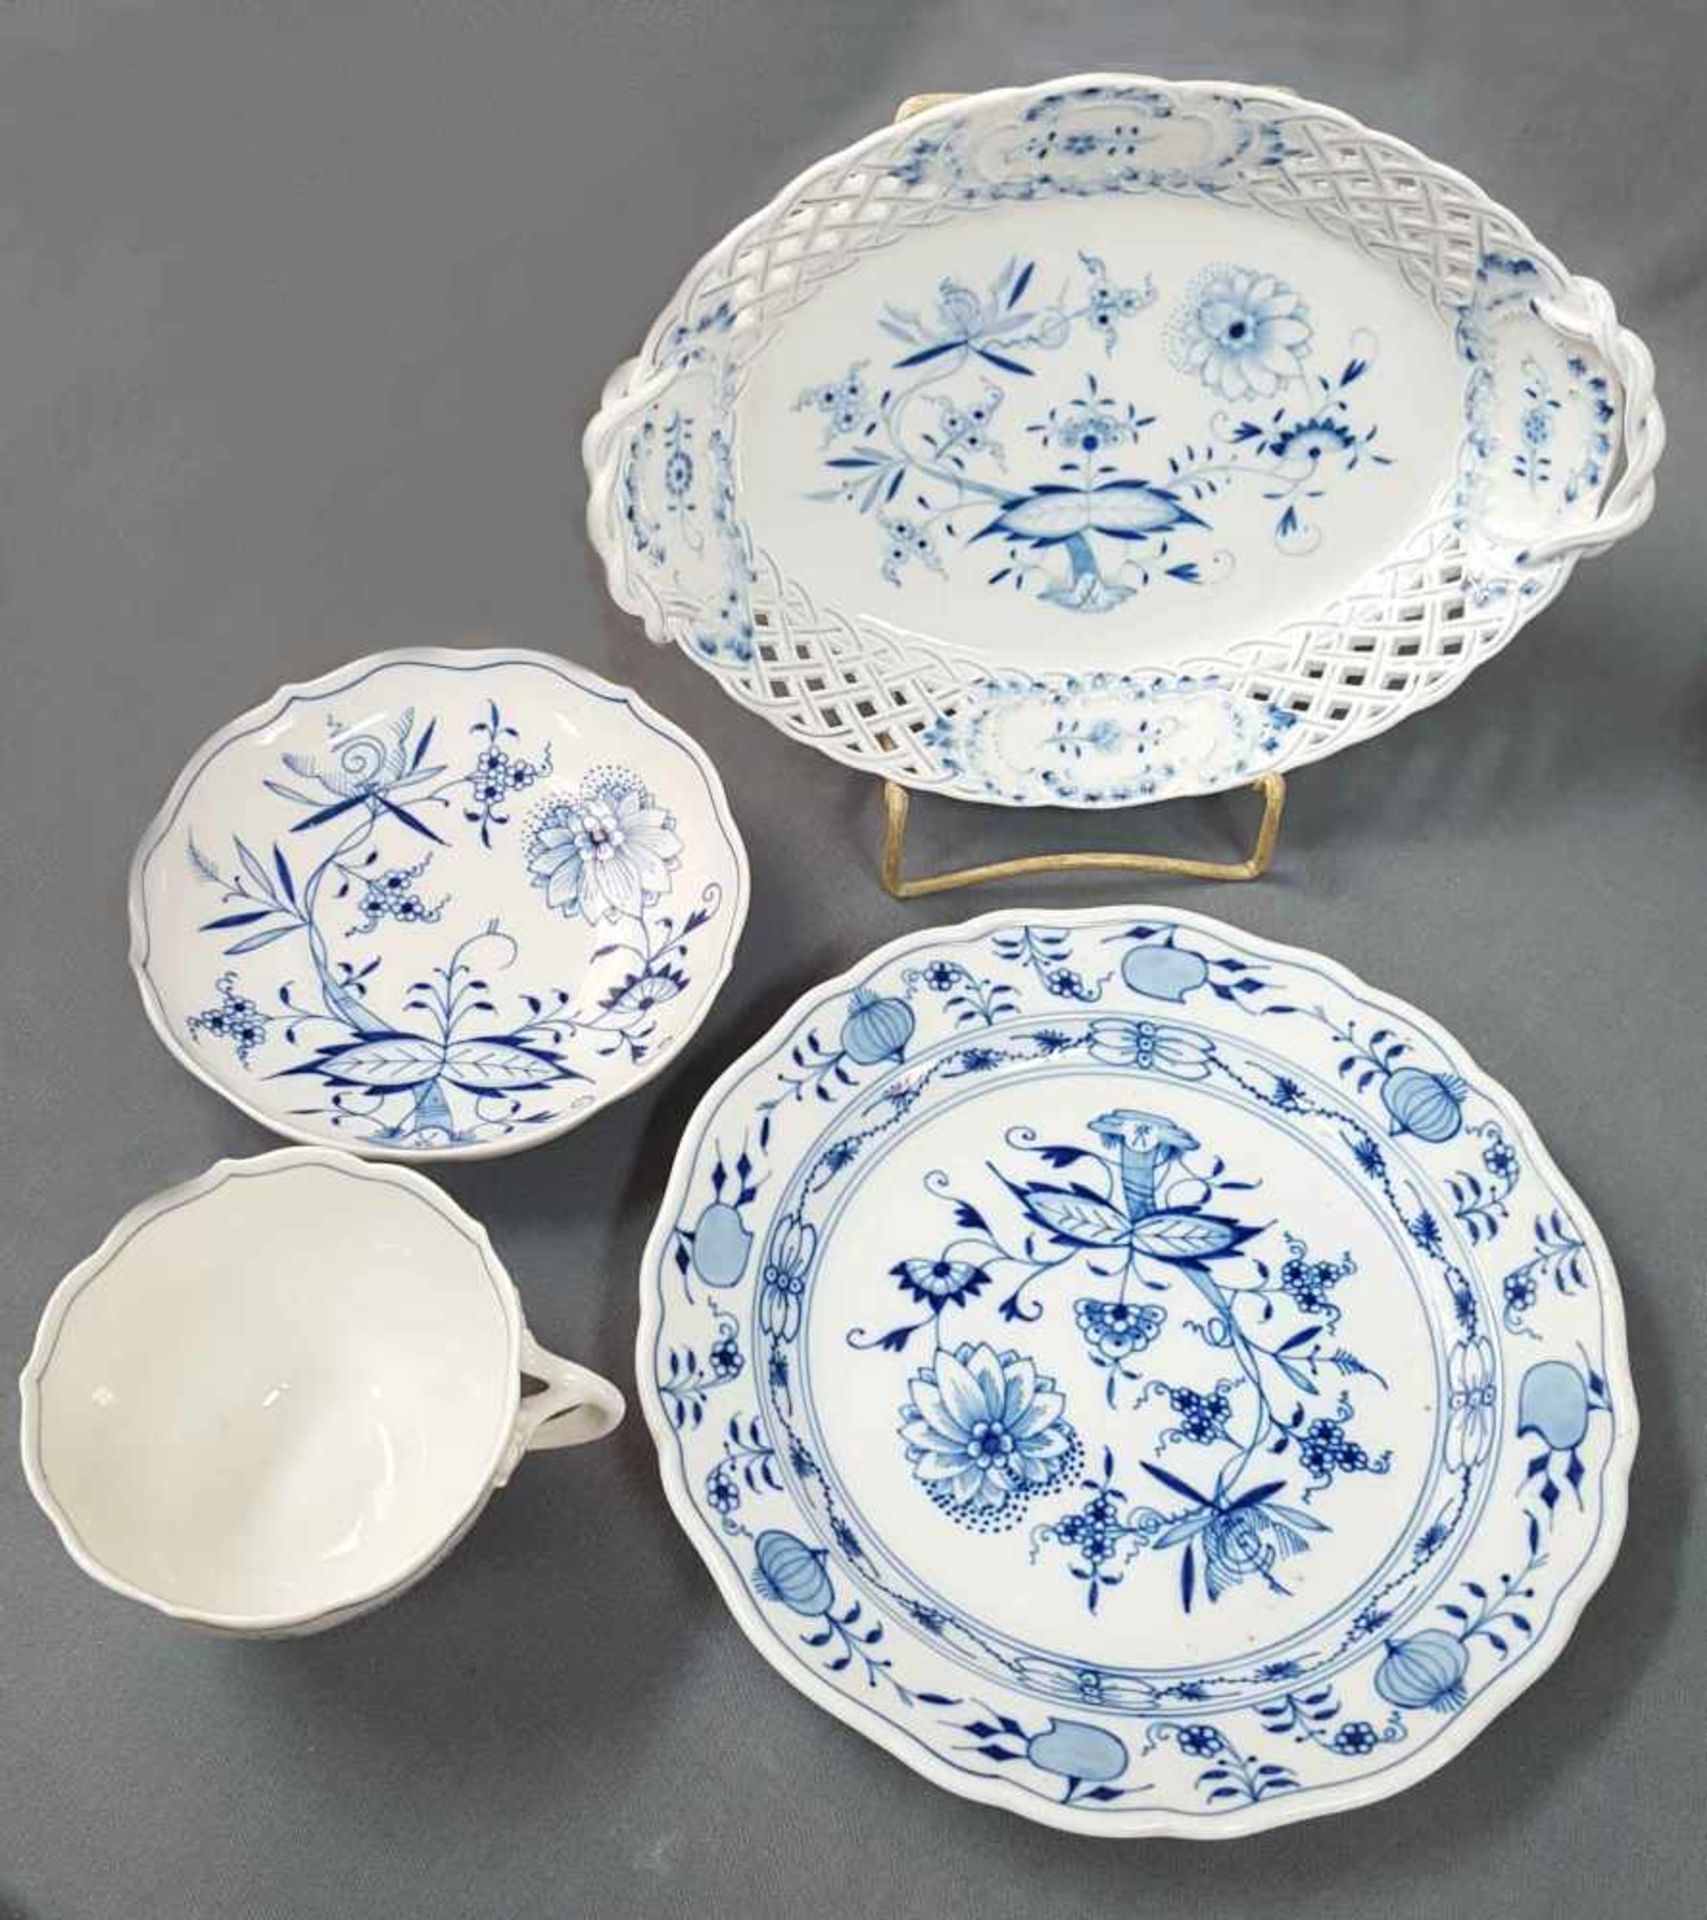 11 parts of Meissen porcelain. Up to 27 cm high. - Bild 10 aus 14